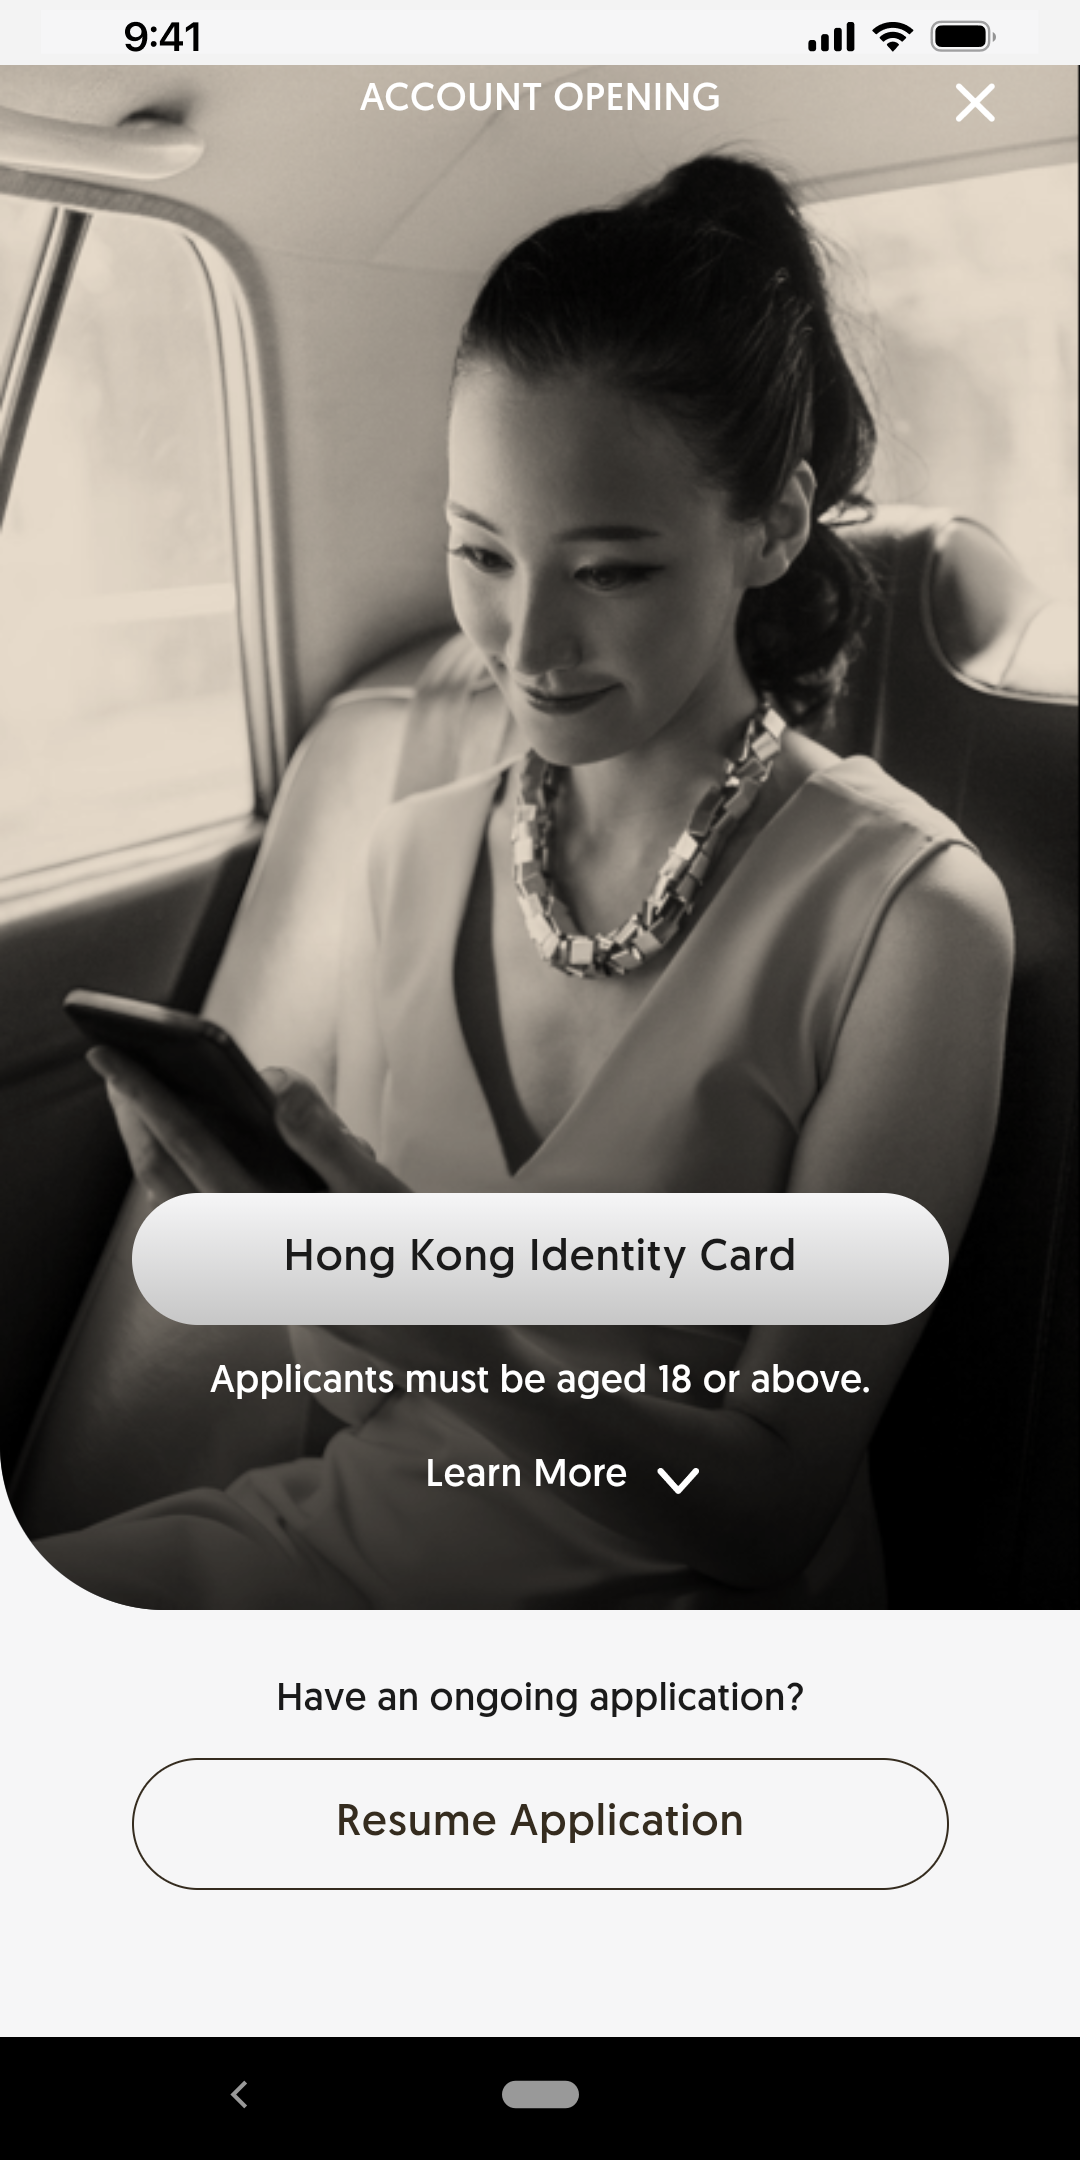 Select “Hong Kong Identity Card”